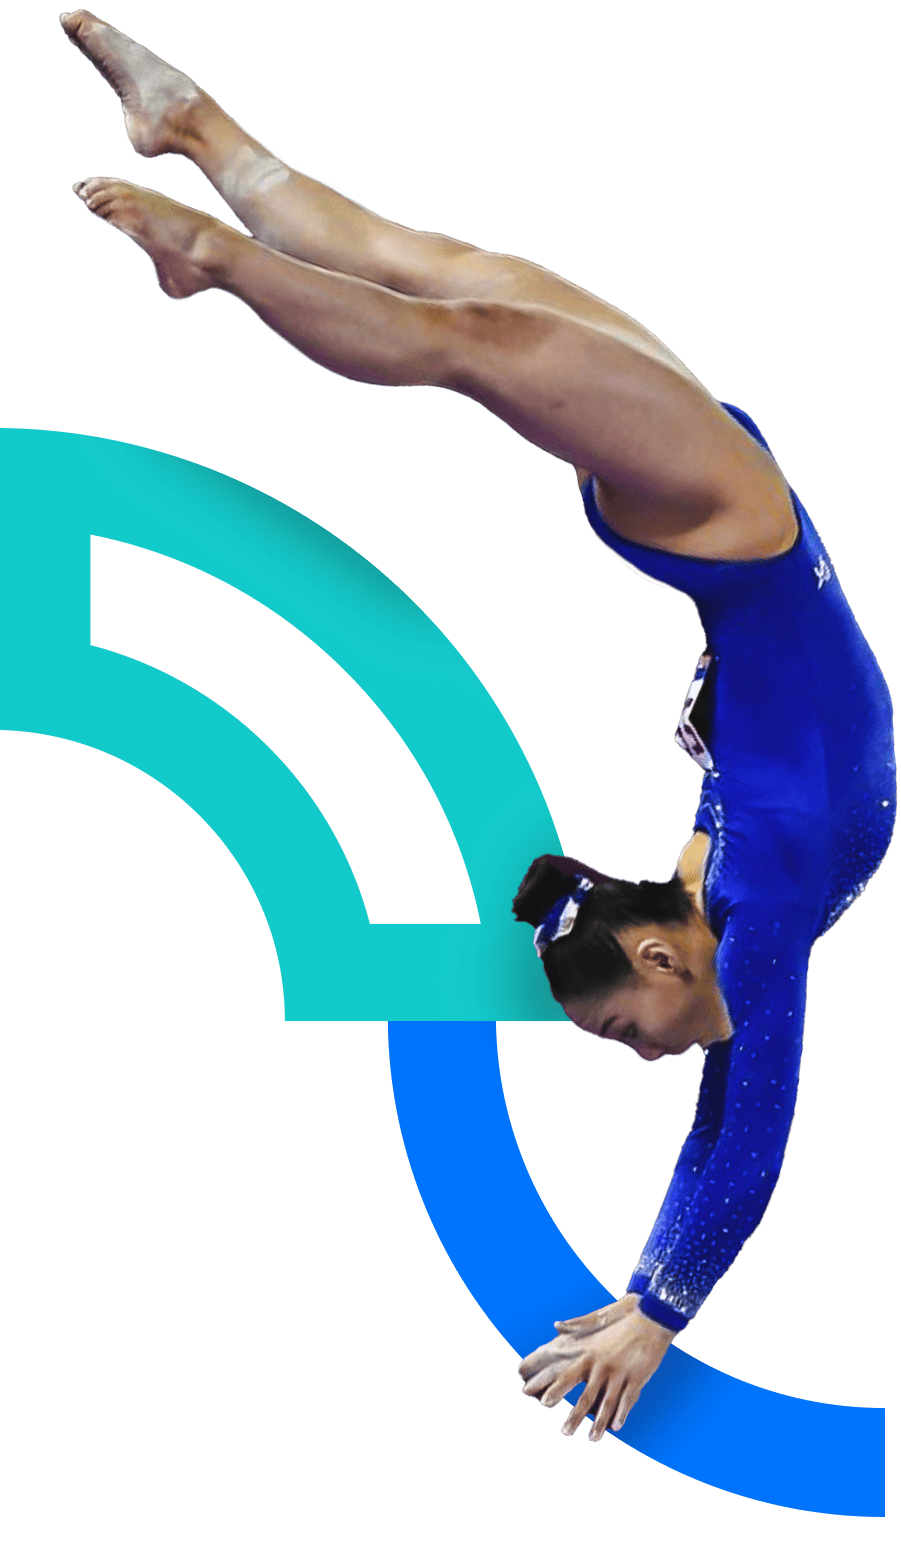 En la foto, se ve el cuerpo completo de una gimnasta que realiza un salto. Viste un uniforme azul. Sus piernas están estiradas y sus manos en posición de sujetar un aparato de la disciplina. 